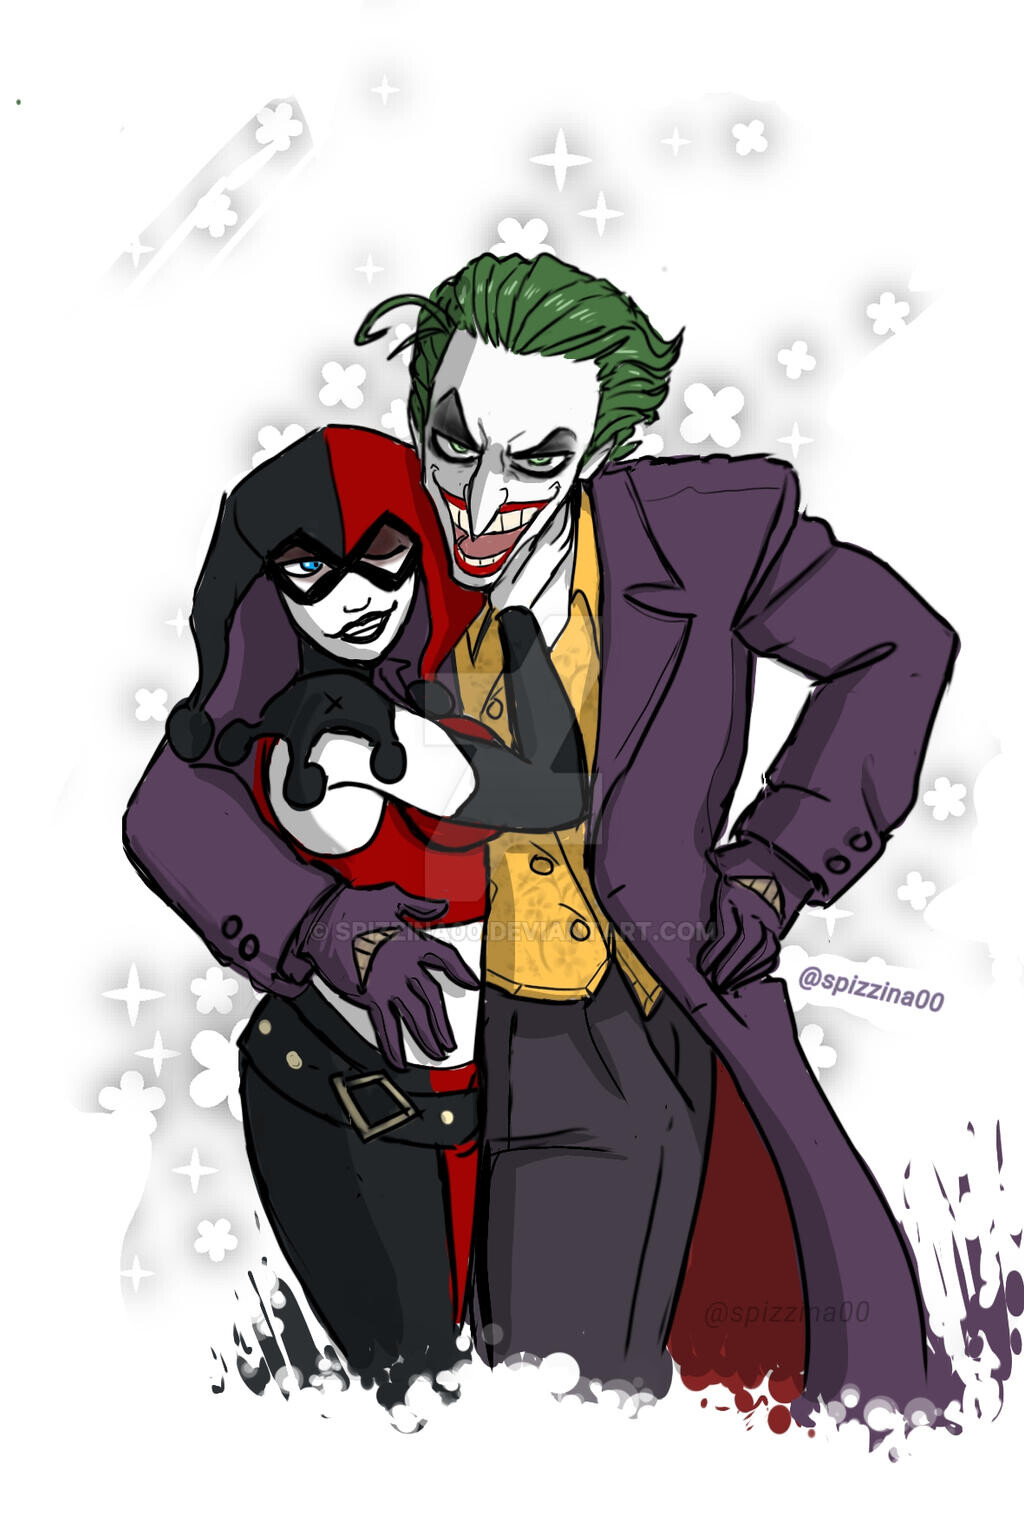 ArtStation - Joker and Harley Quinn